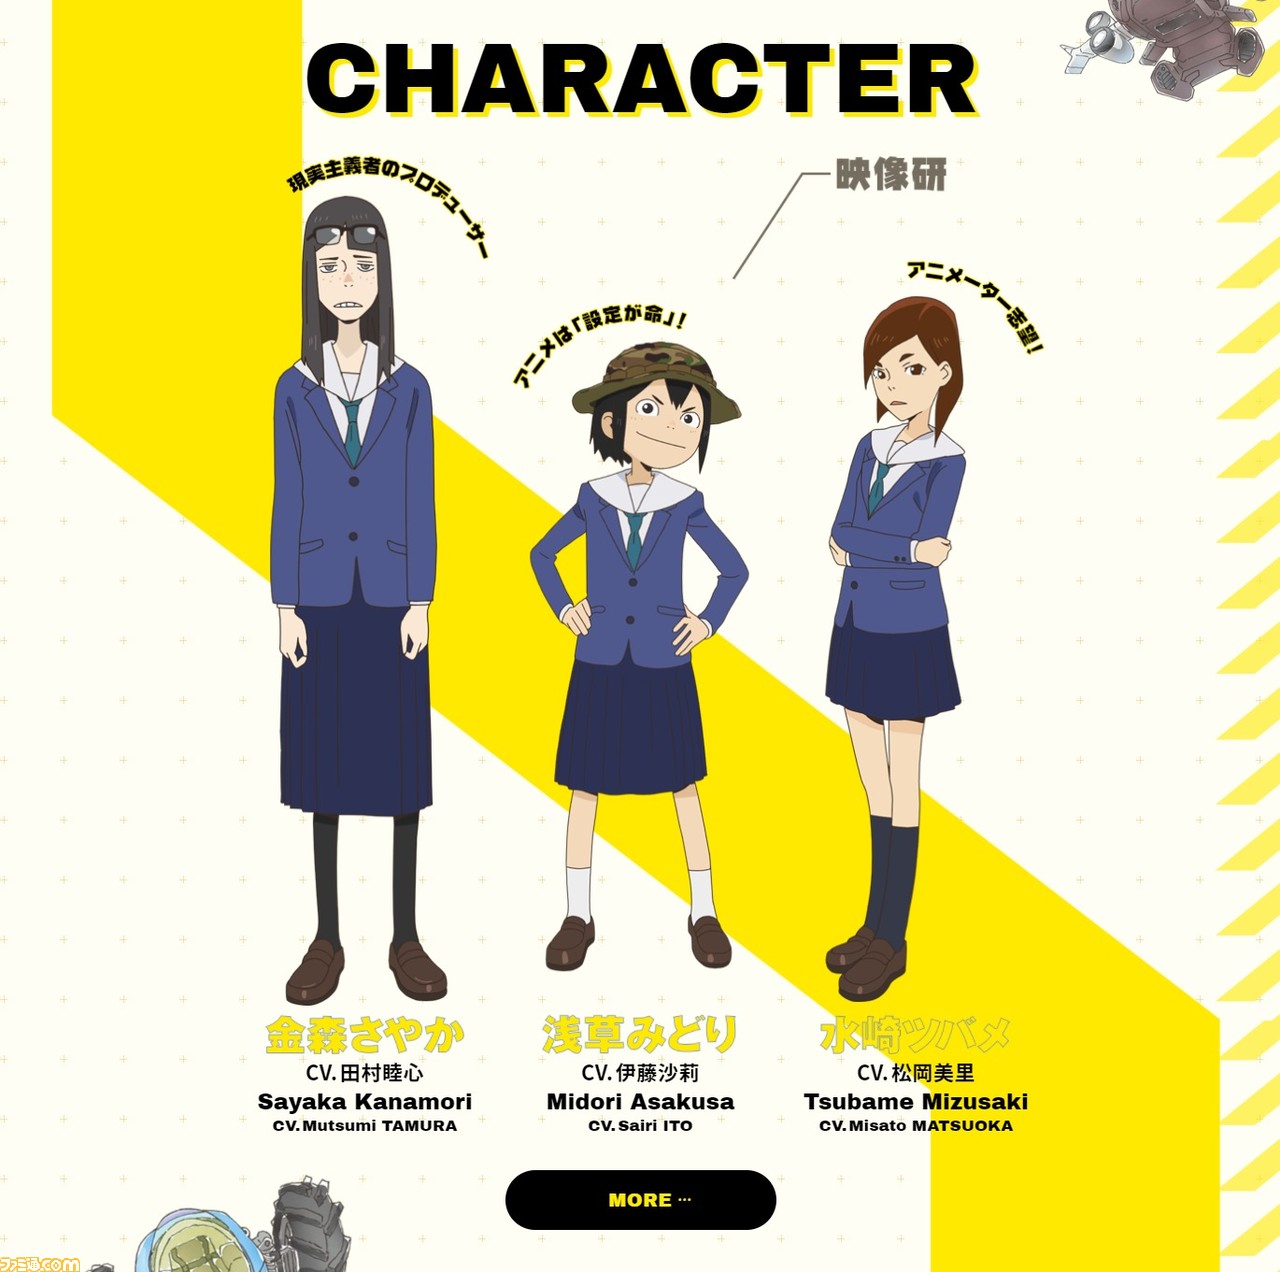 アニメ 映像研には手を出すな リアルと空想世界が入り交じる 東京アニメアワードみんなが選ぶベスト100の第1位に輝いた本作の魅力 アマゾンプライムビデオおすすめ ゲーム エンタメ最新情報のファミ通 Com